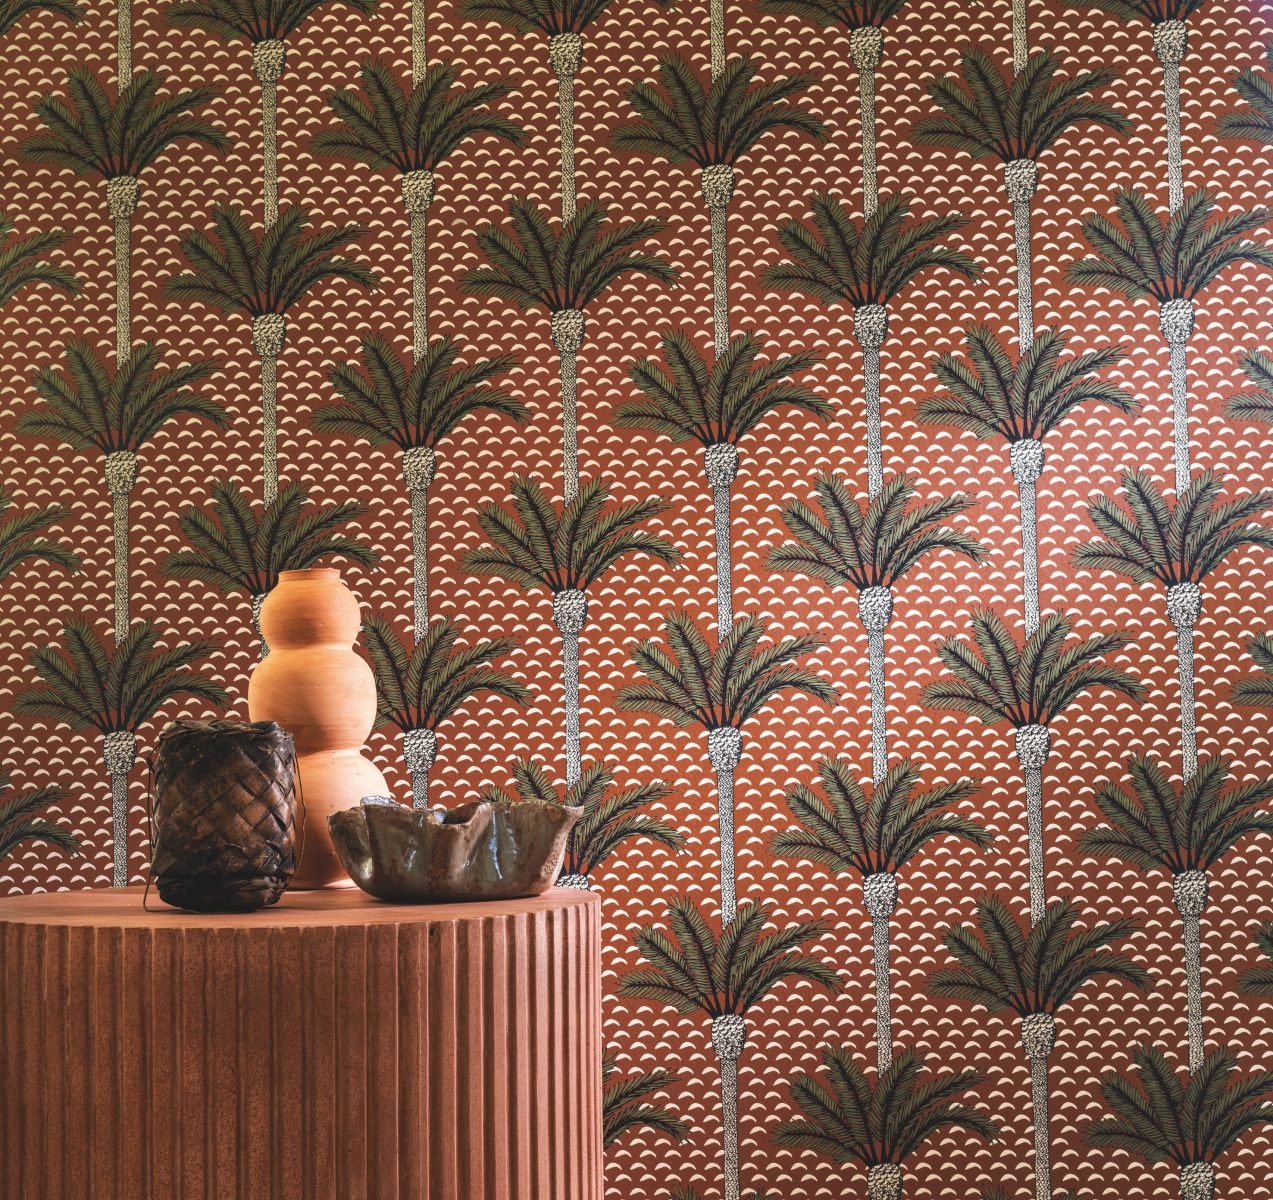 Rozsda barna színű struktúrált pálmafa mintás casamance design tapéta